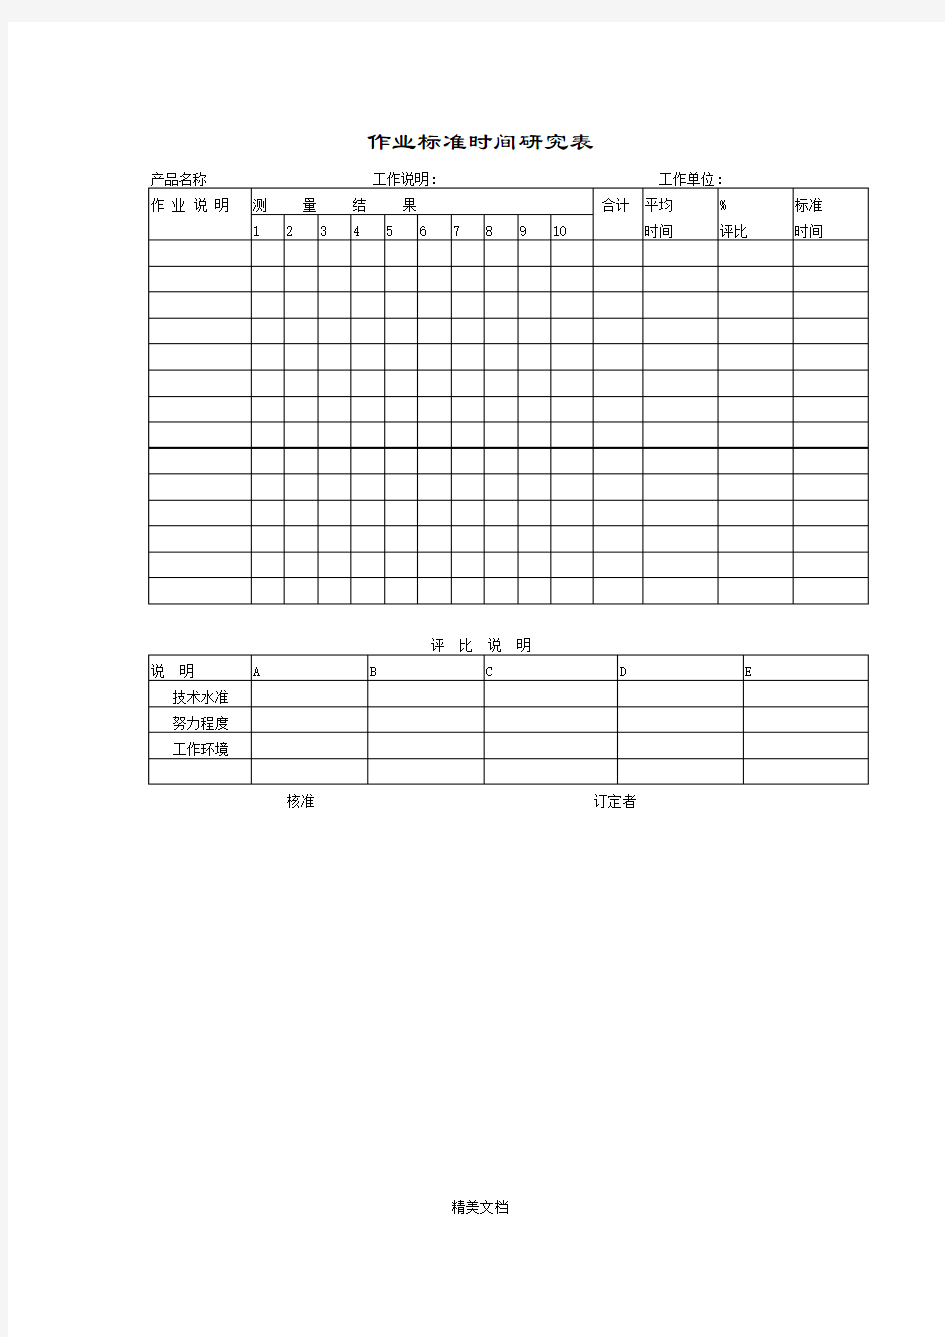 作业标准时间测量研究表